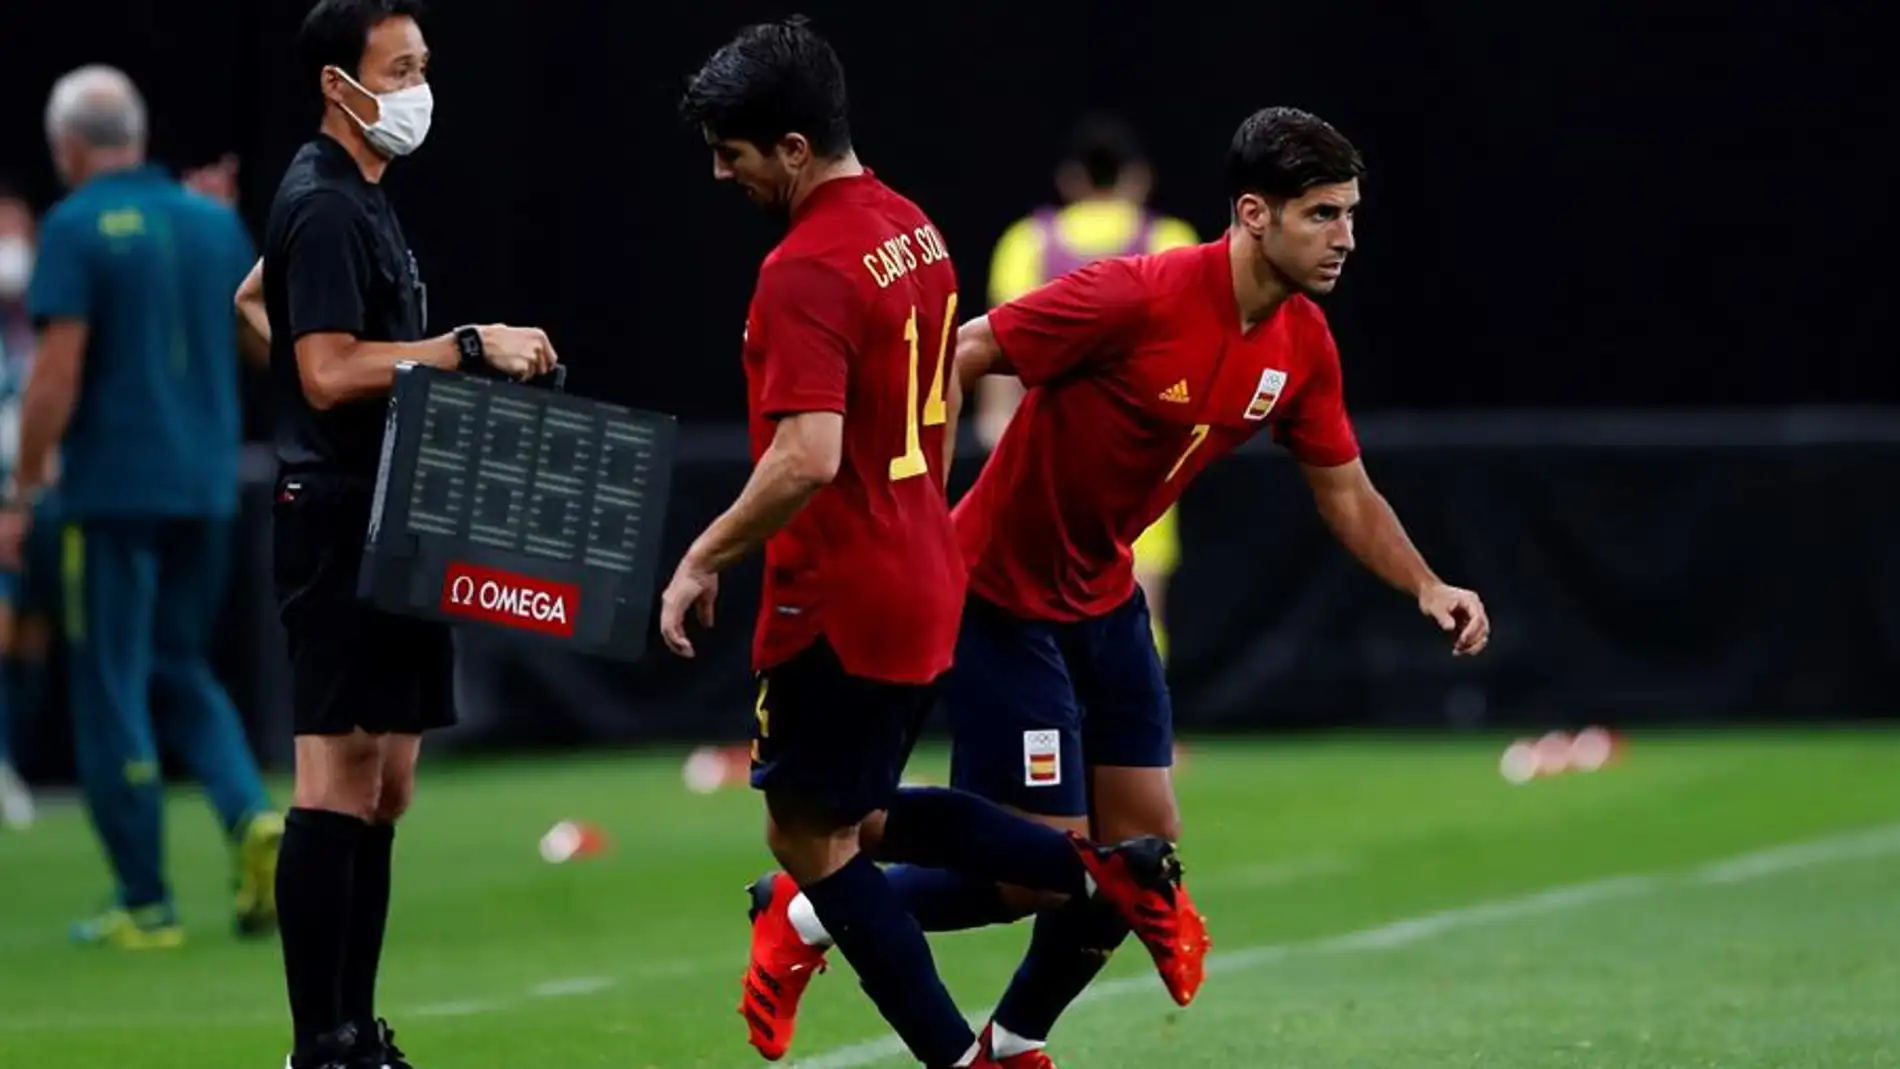 Alineación confirmada de España hoy ante Argentina en el partido de los Juegos Olímpicos de Tokio